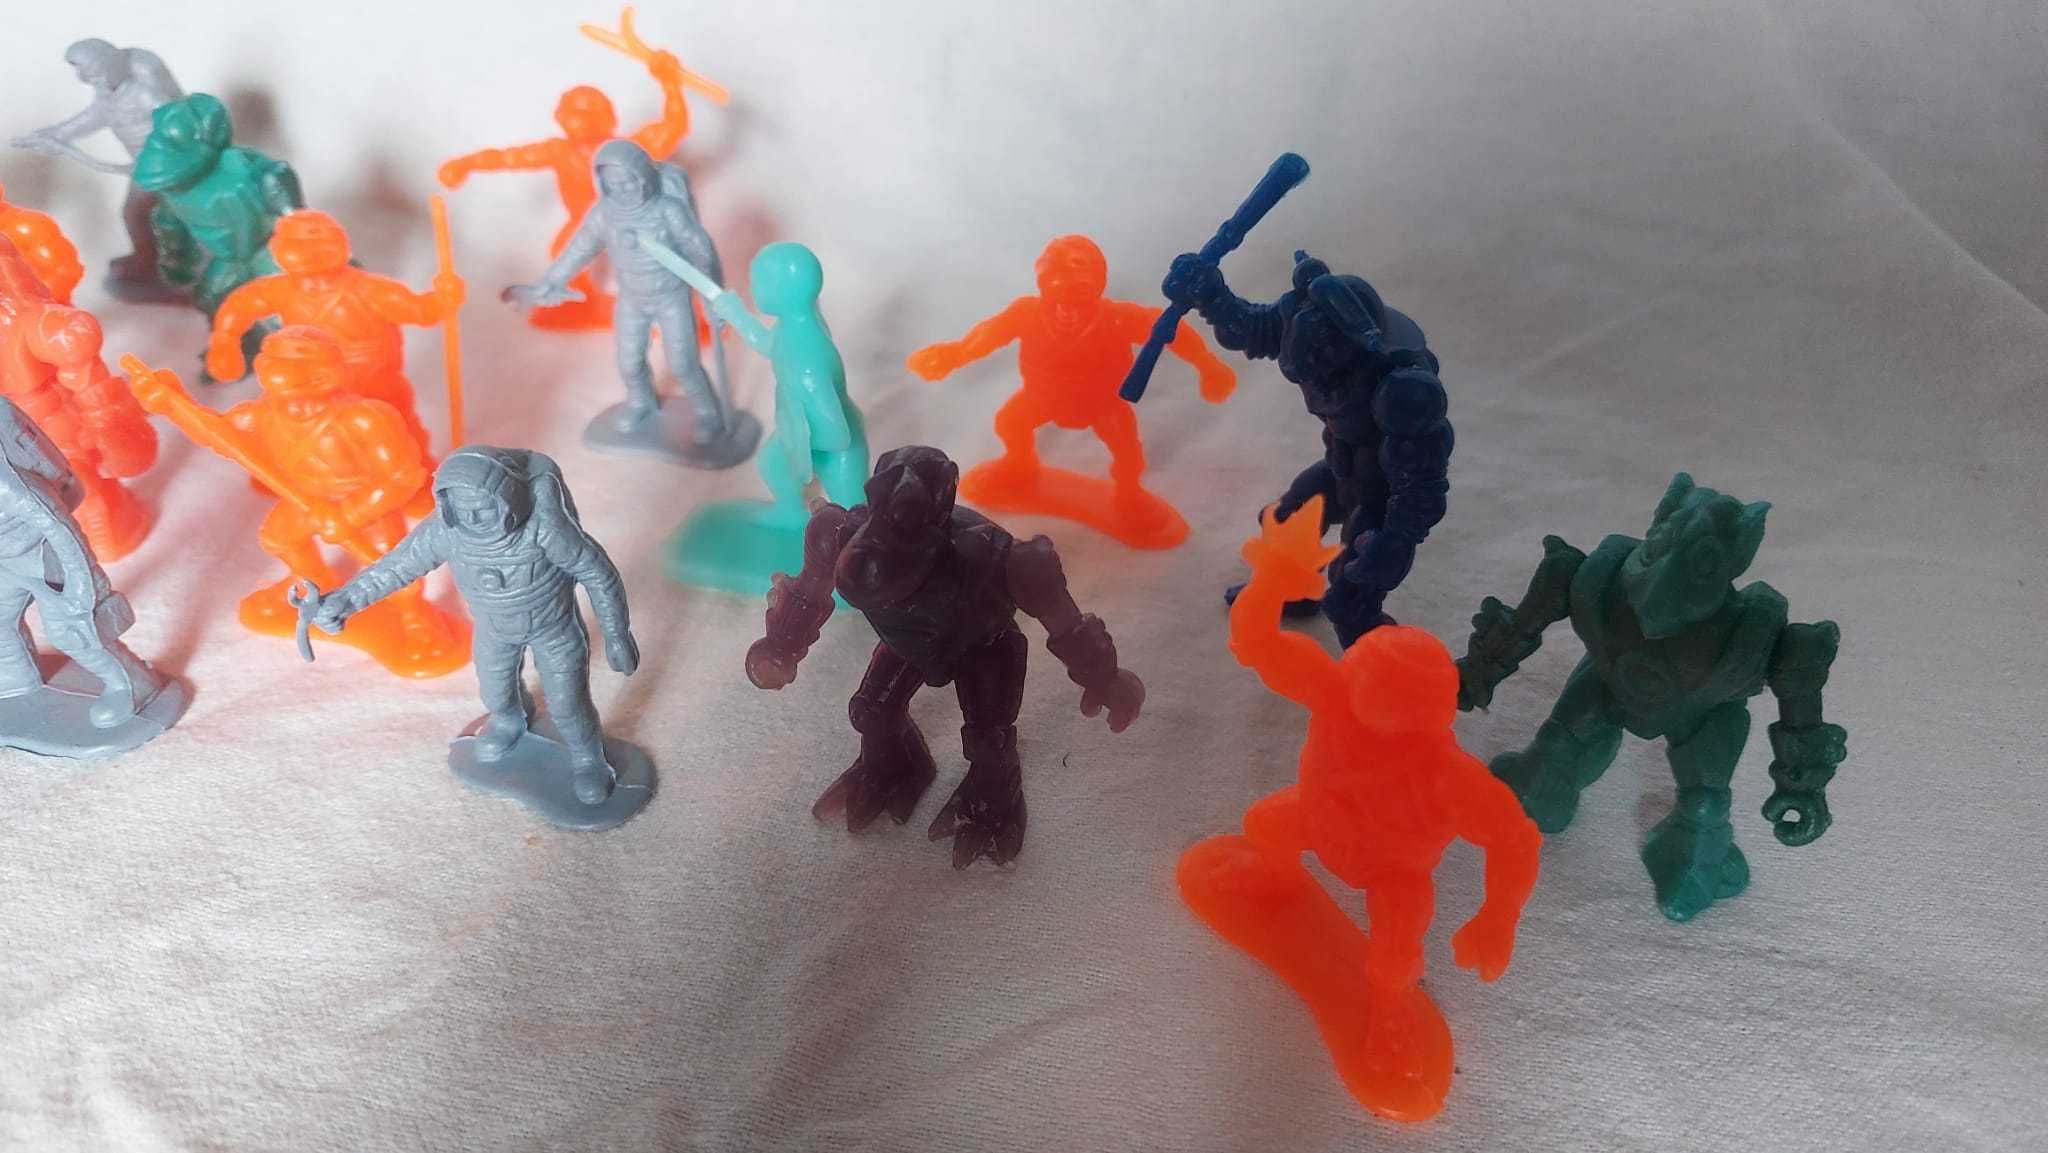 Lot figurine plastic noi pentru copii